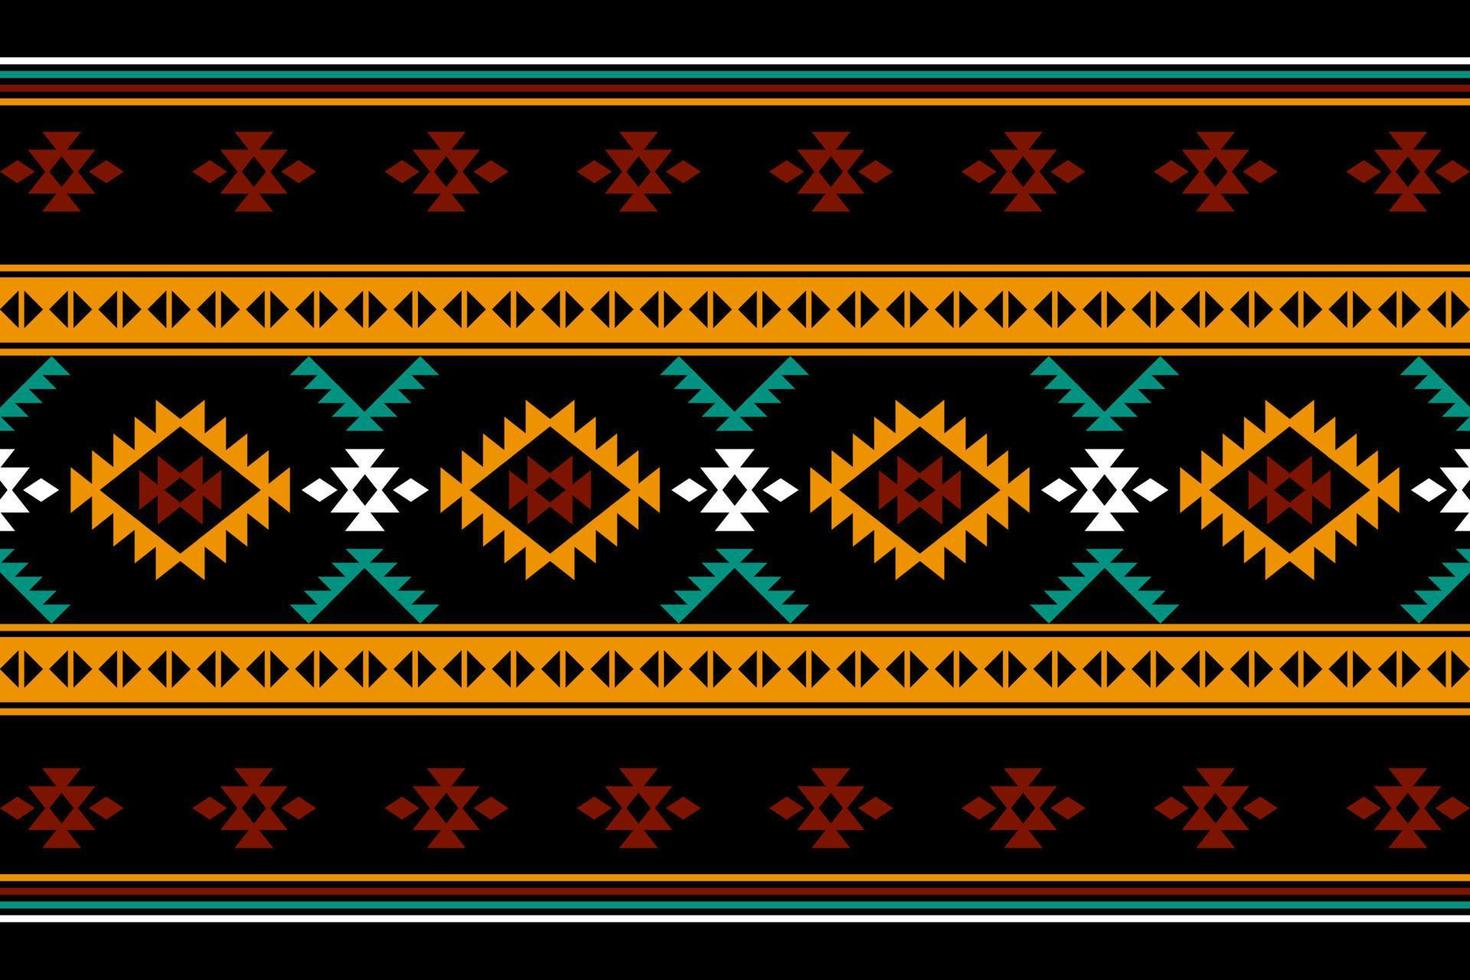 design tradicional geométrico étnico oriental sem costura padrão para fundo, tapete, papel de parede, roupas, embrulho, batik, tecido, vetor, ilustração, estilo bordado. vetor